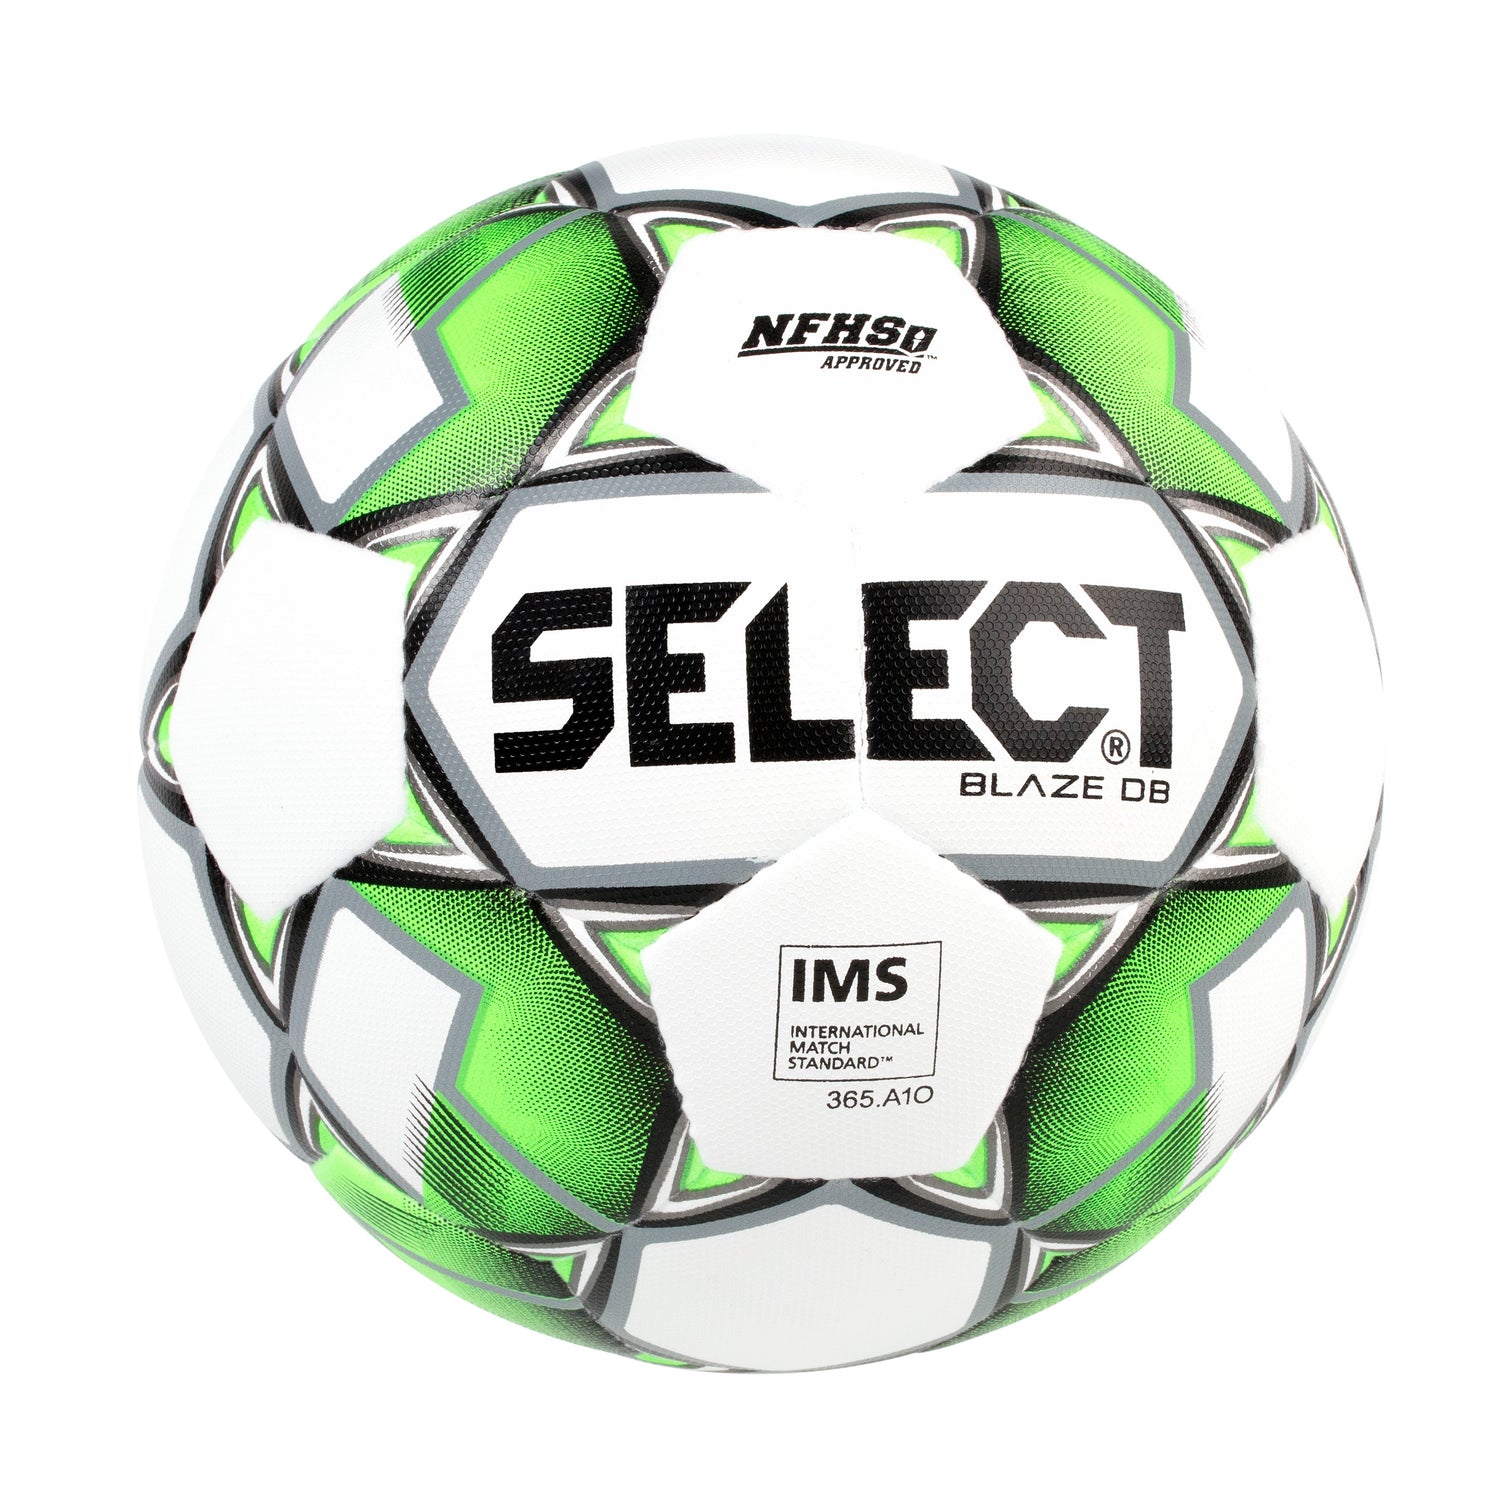 Select Sport Blaze DB Soccer Ball - NFHS